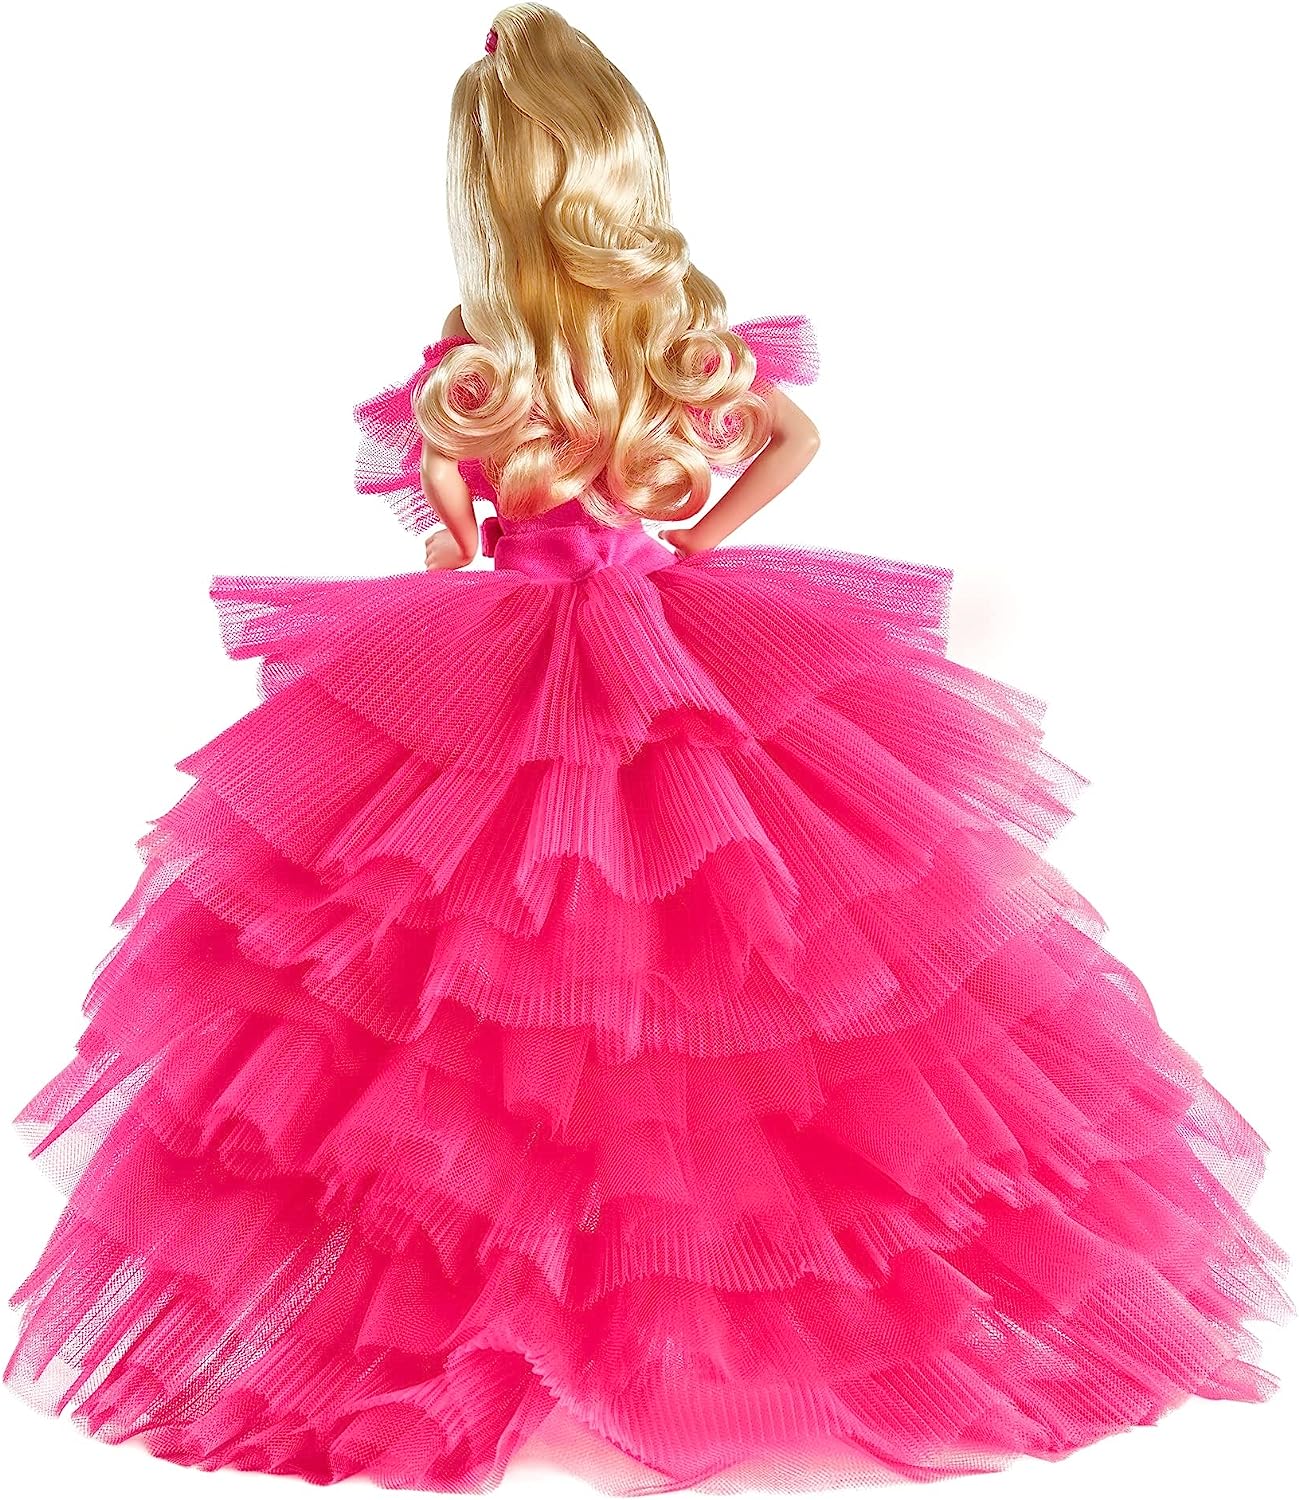 値段設定 【送料込】バービー Barbie ピンクプレミア ピンクコレクションドール ぬいぐるみ